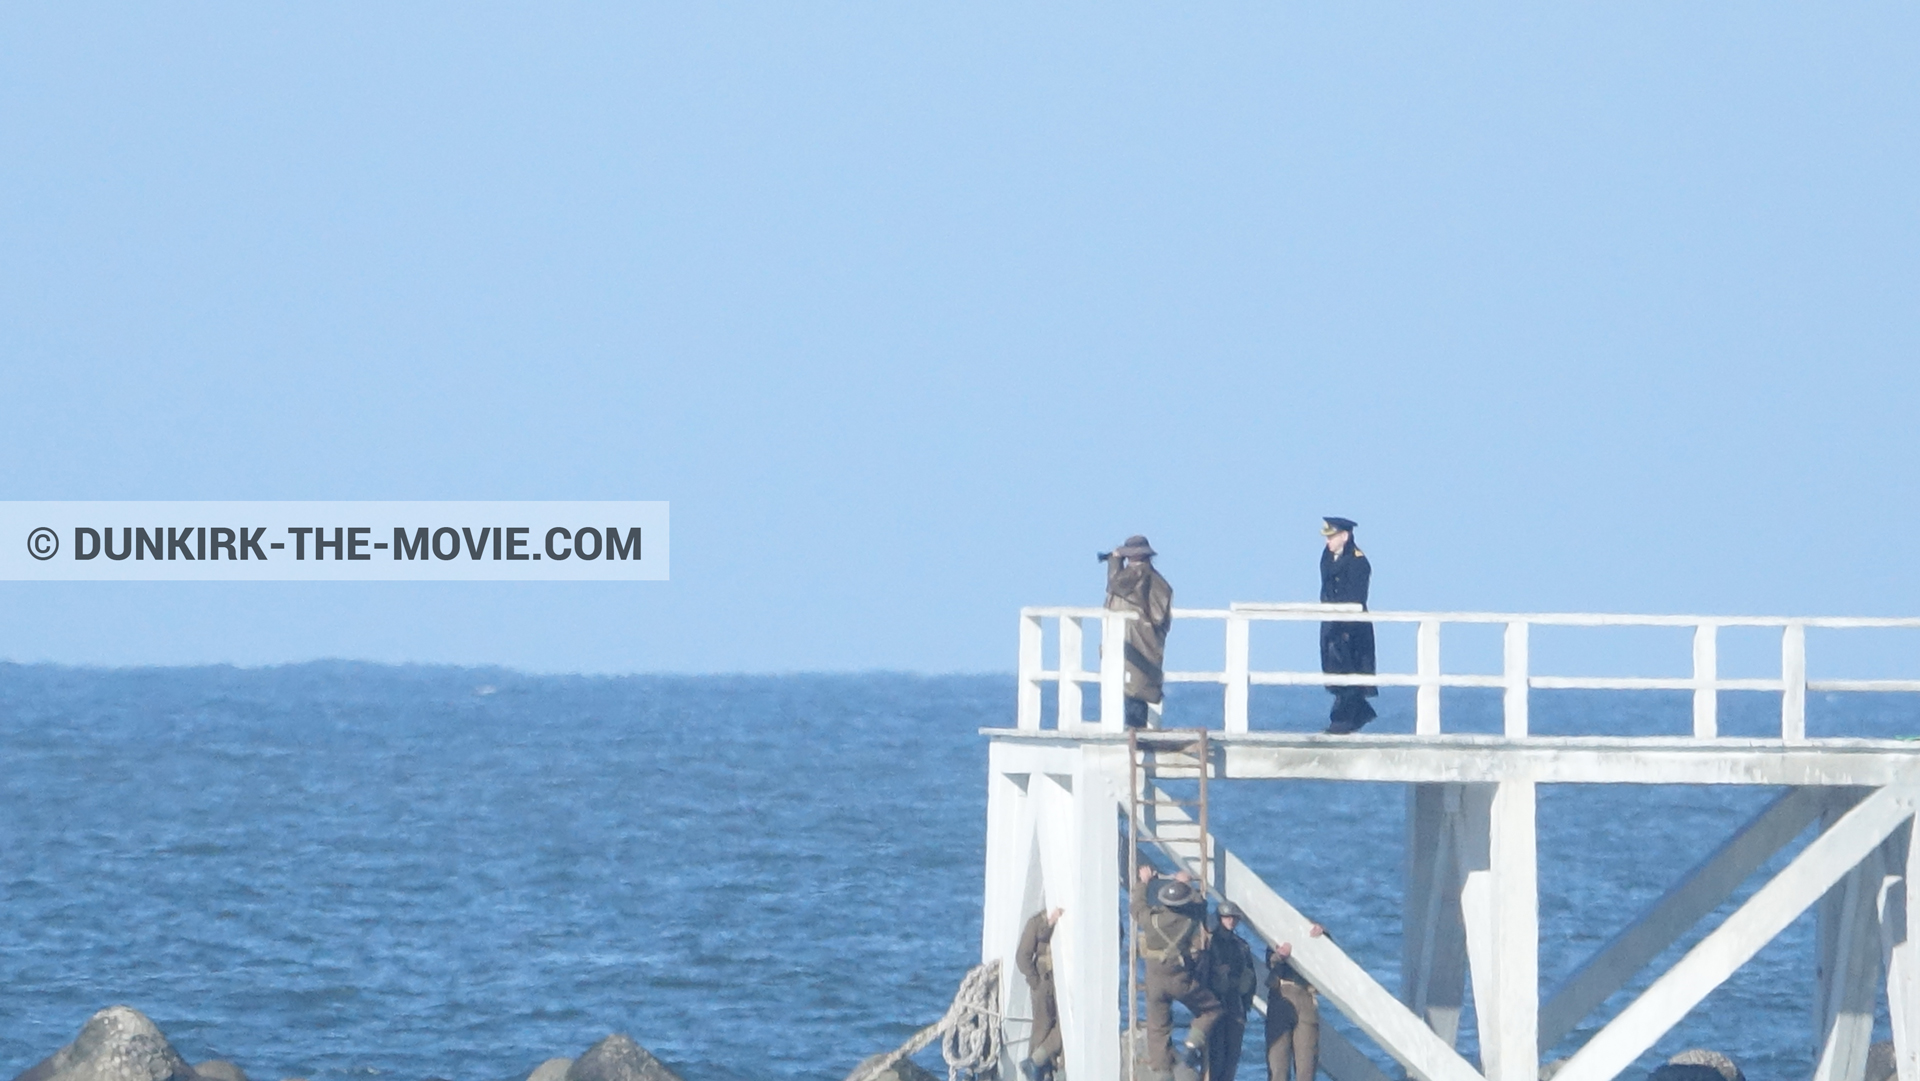 Photo avec bateau, ciel bleu, jetée EST, Kenneth Branagh, mer calme, équipe technique,  des dessous du Film Dunkerque de Nolan